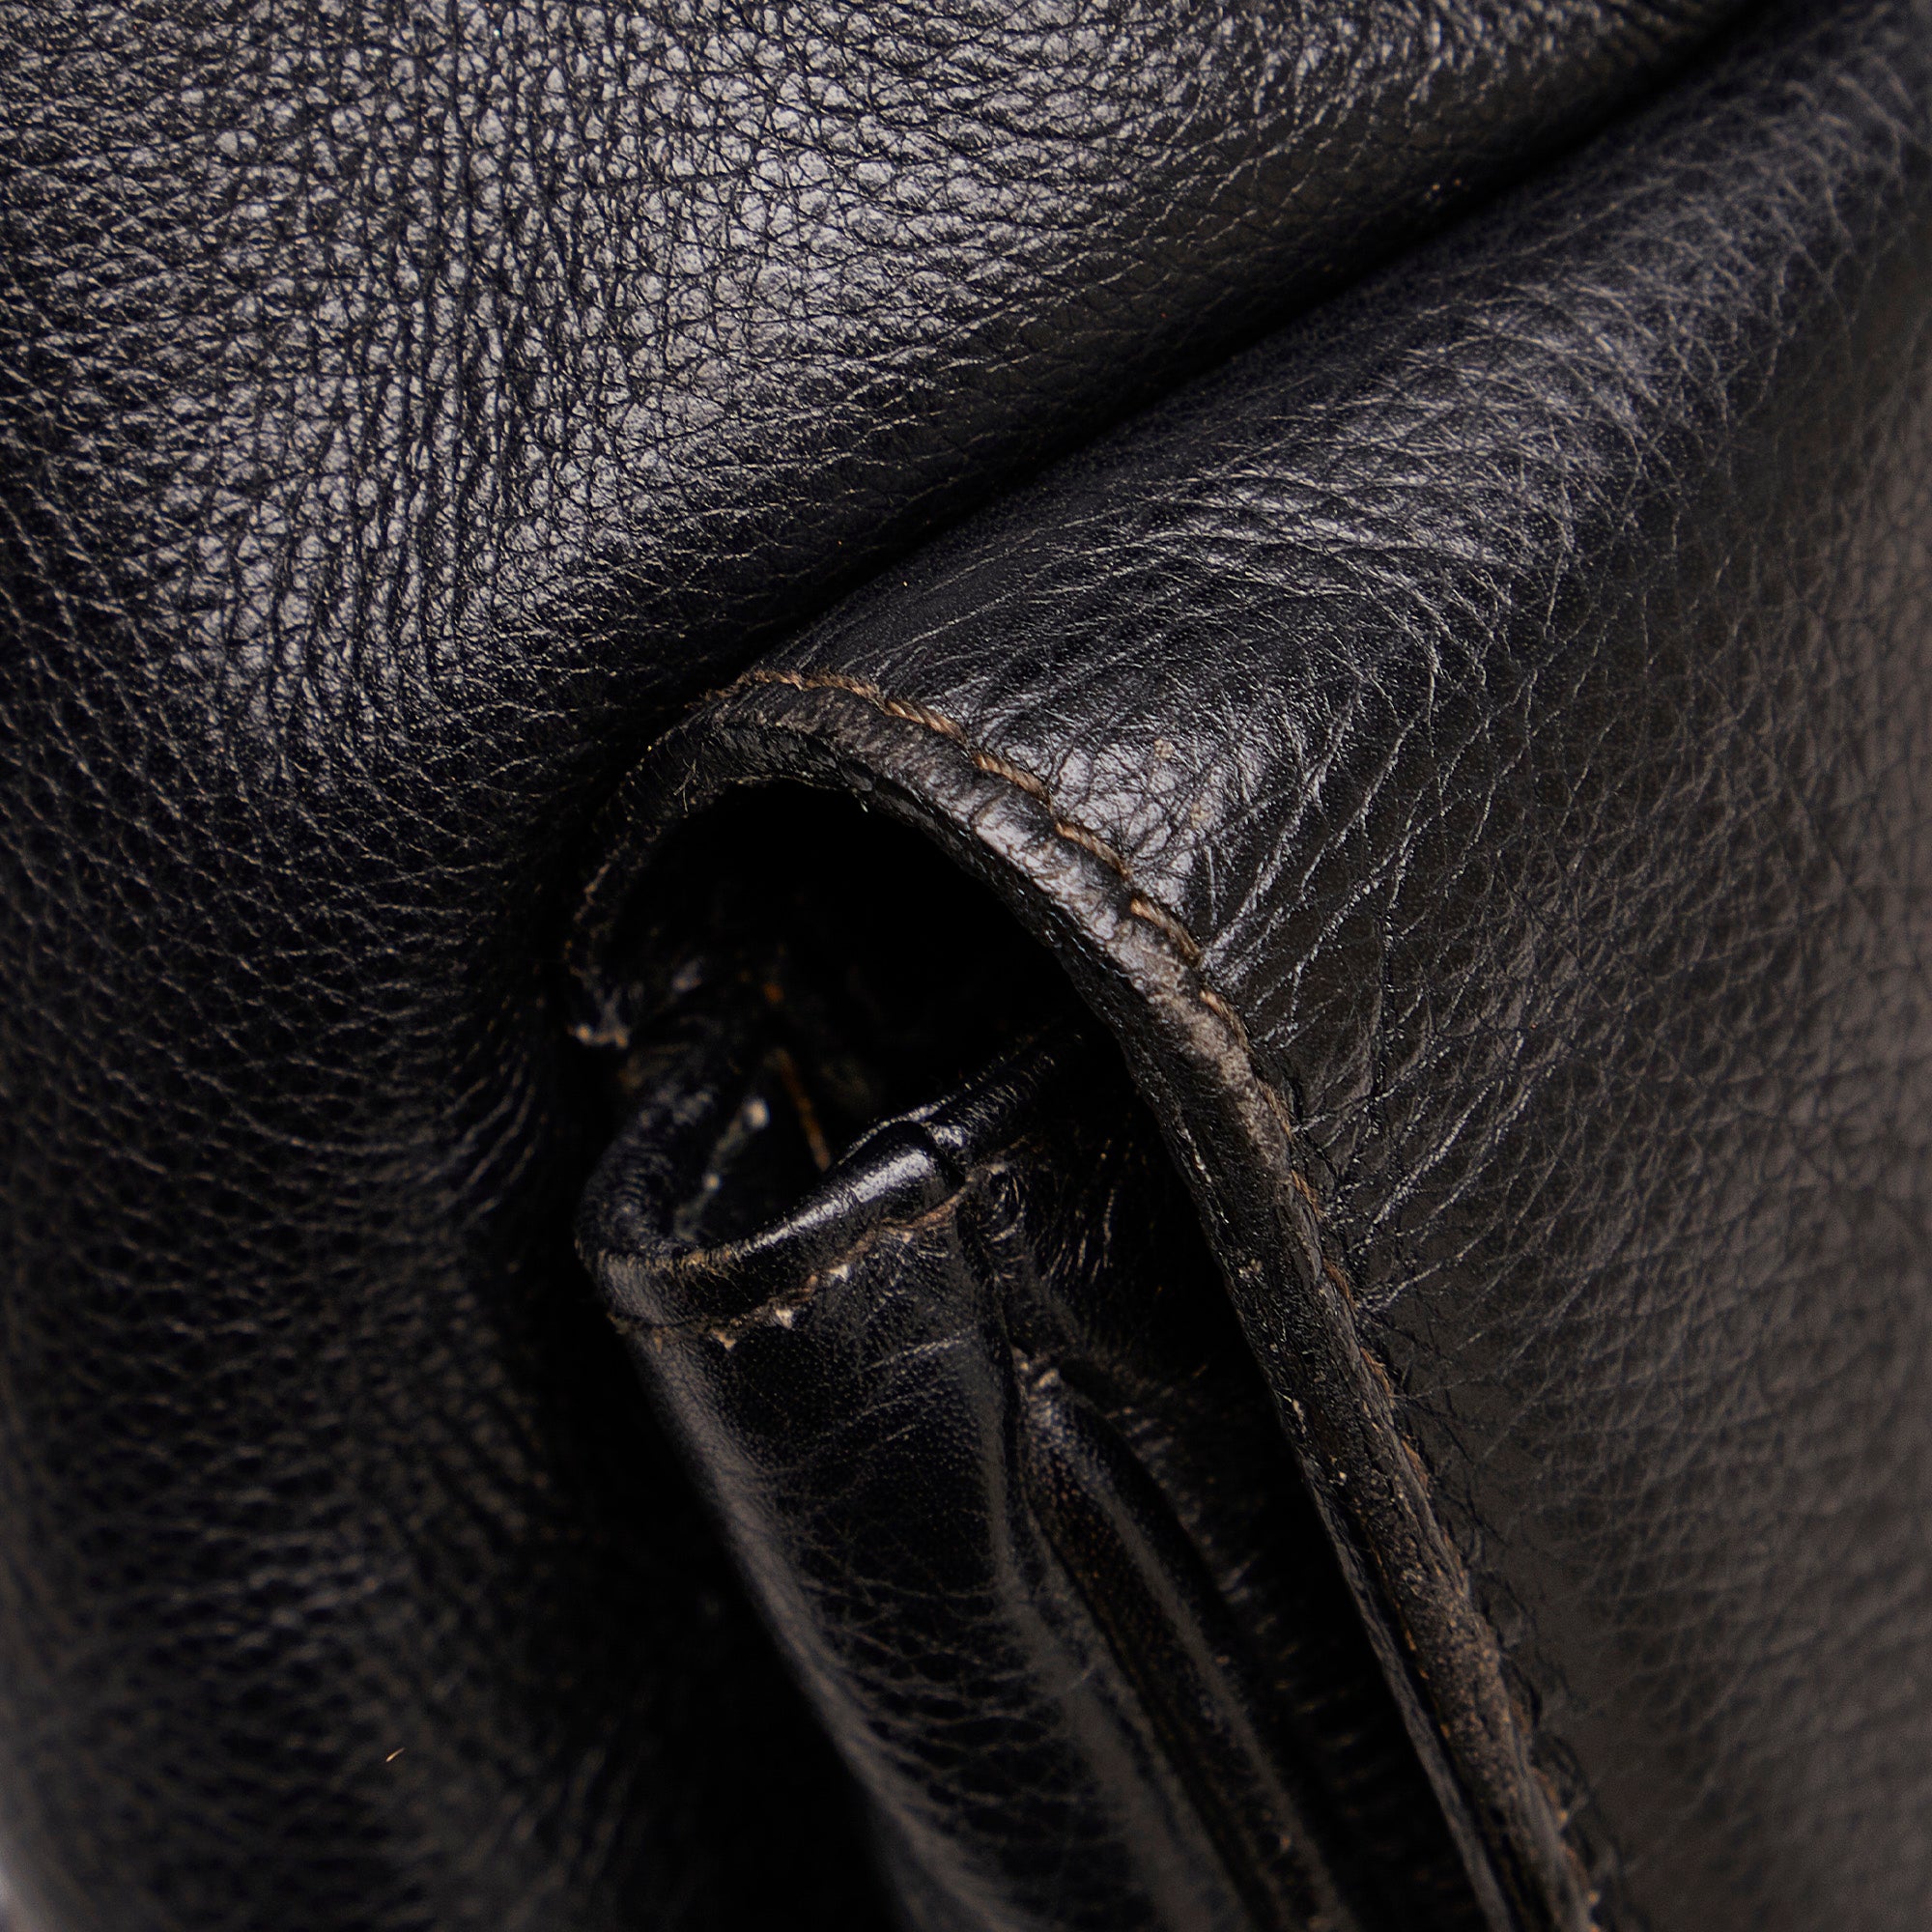 Black Gucci Bamboo Canvas Shoulder Bag – Designer Revival